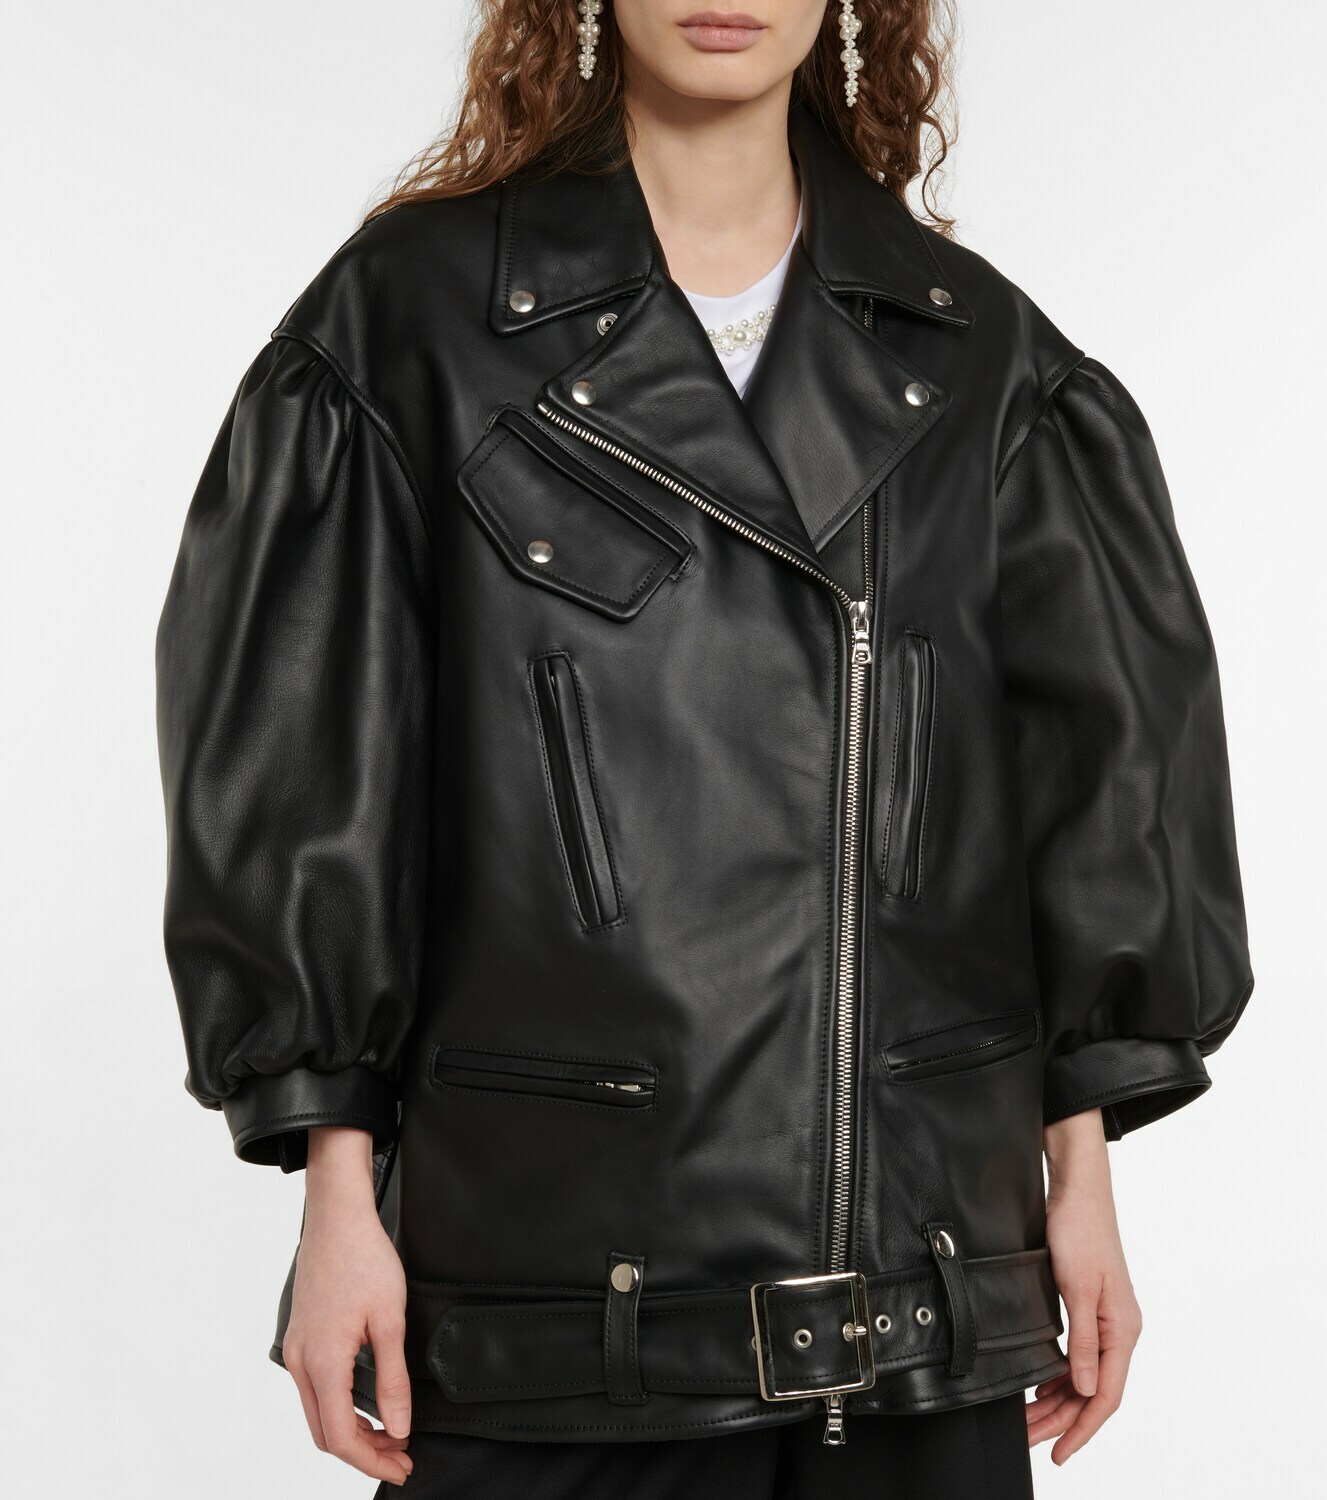 Simone Rocha - Leather biker jacket Simone Rocha